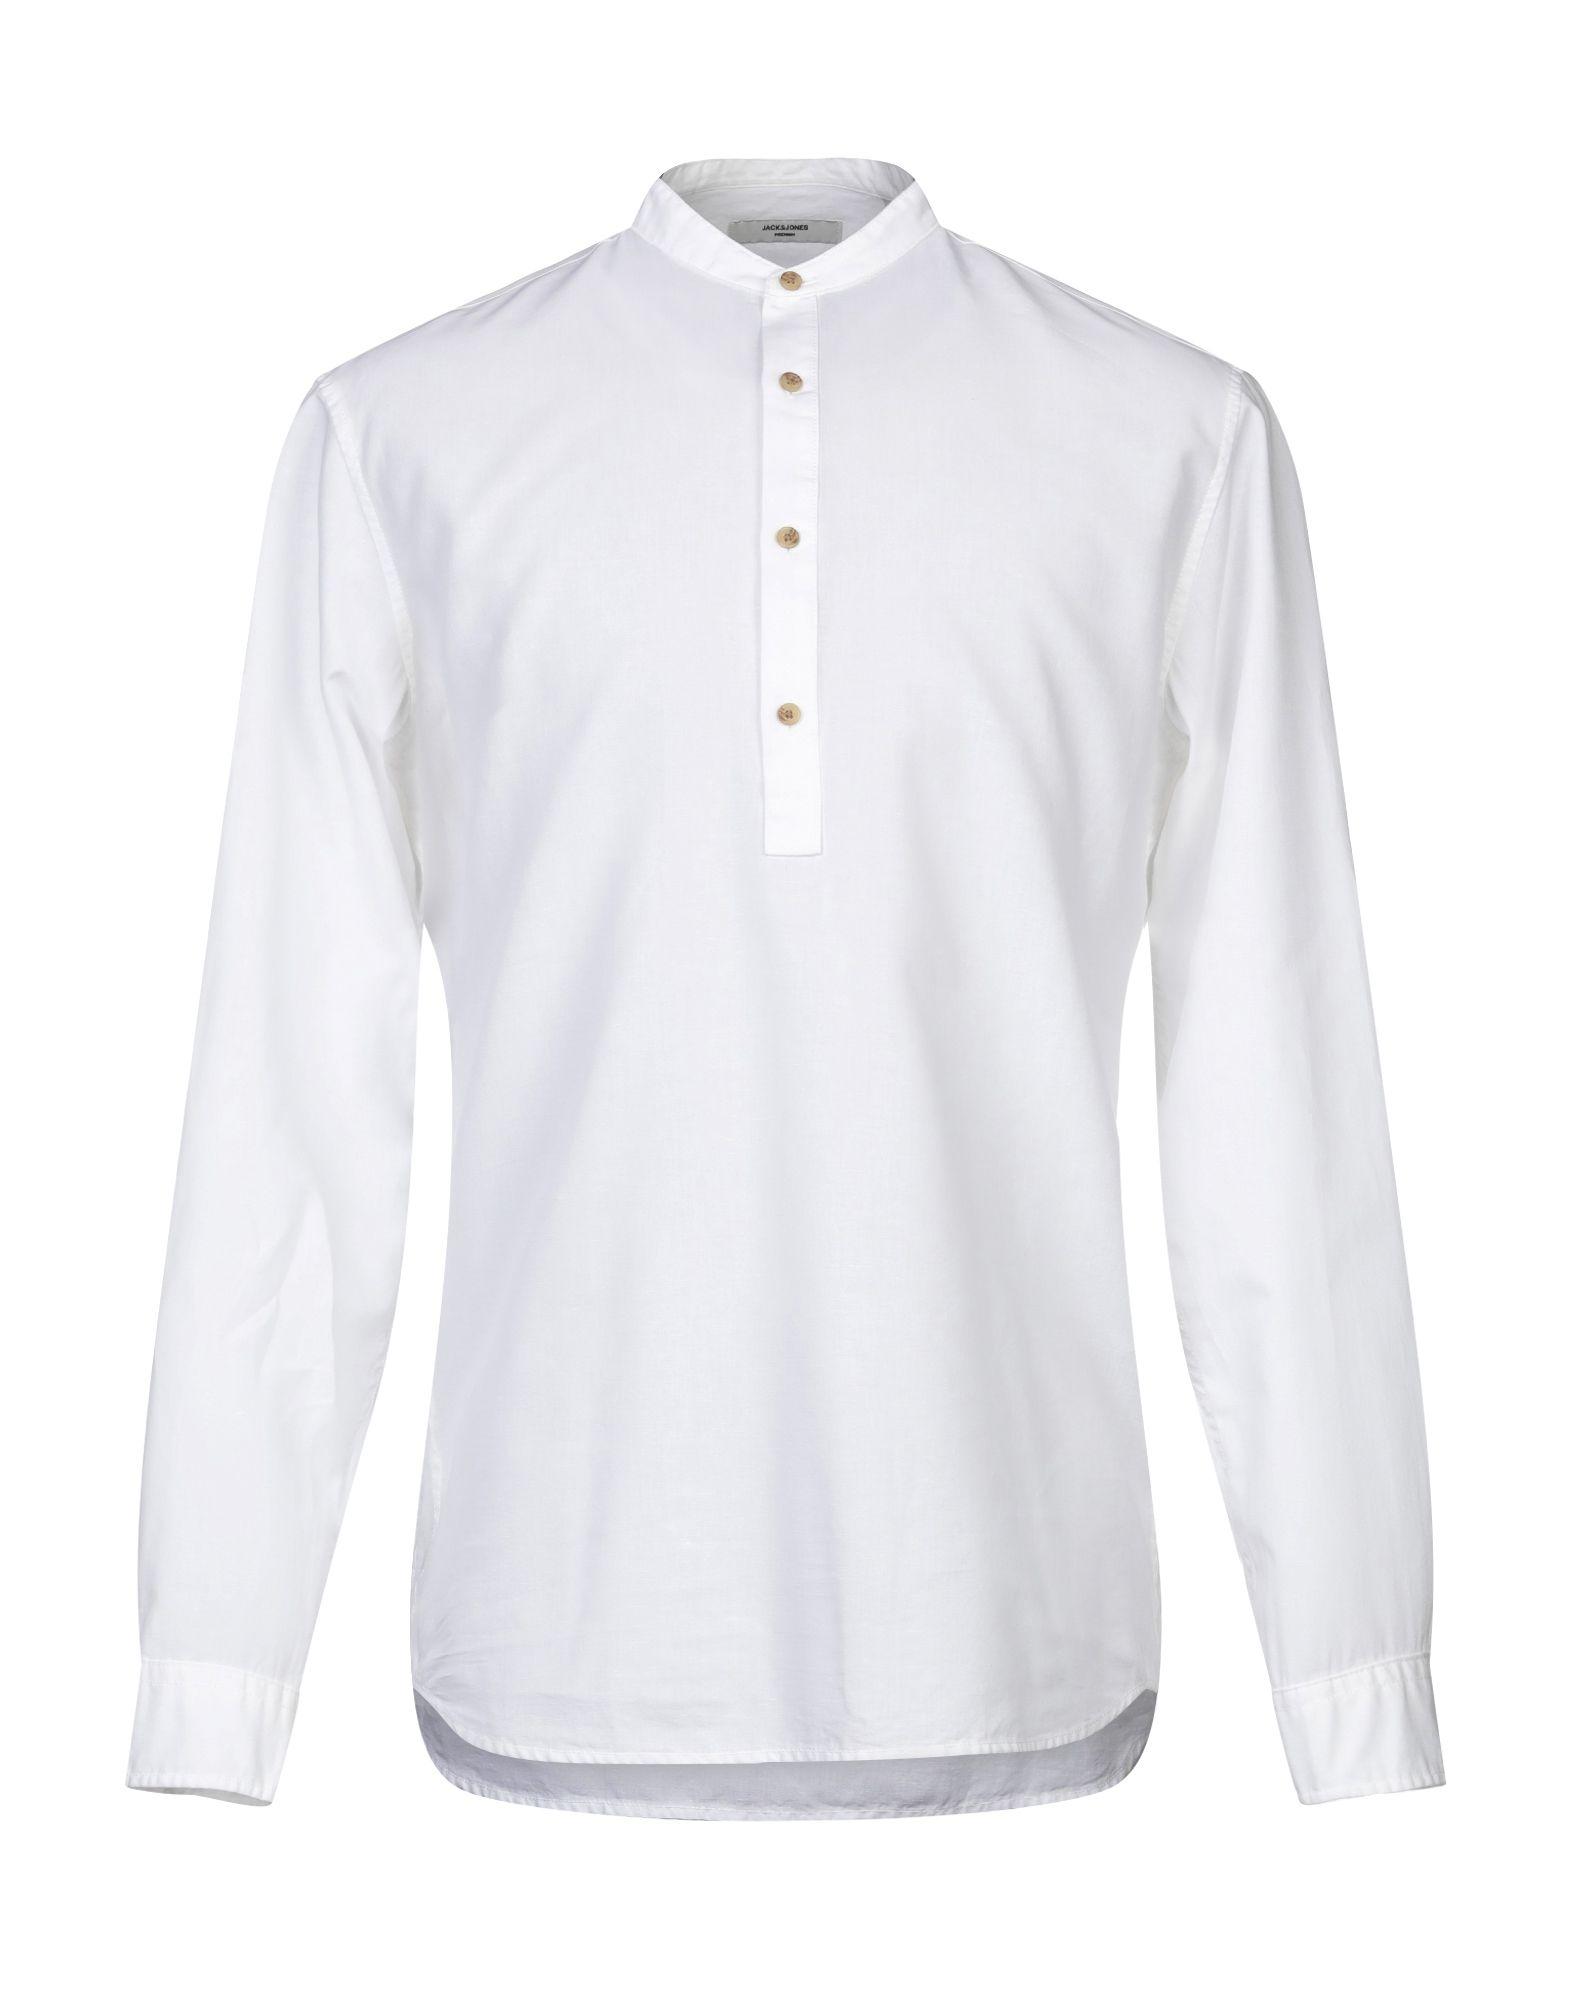 Jack & Jones Cotton Shirt in White for Men - Lyst